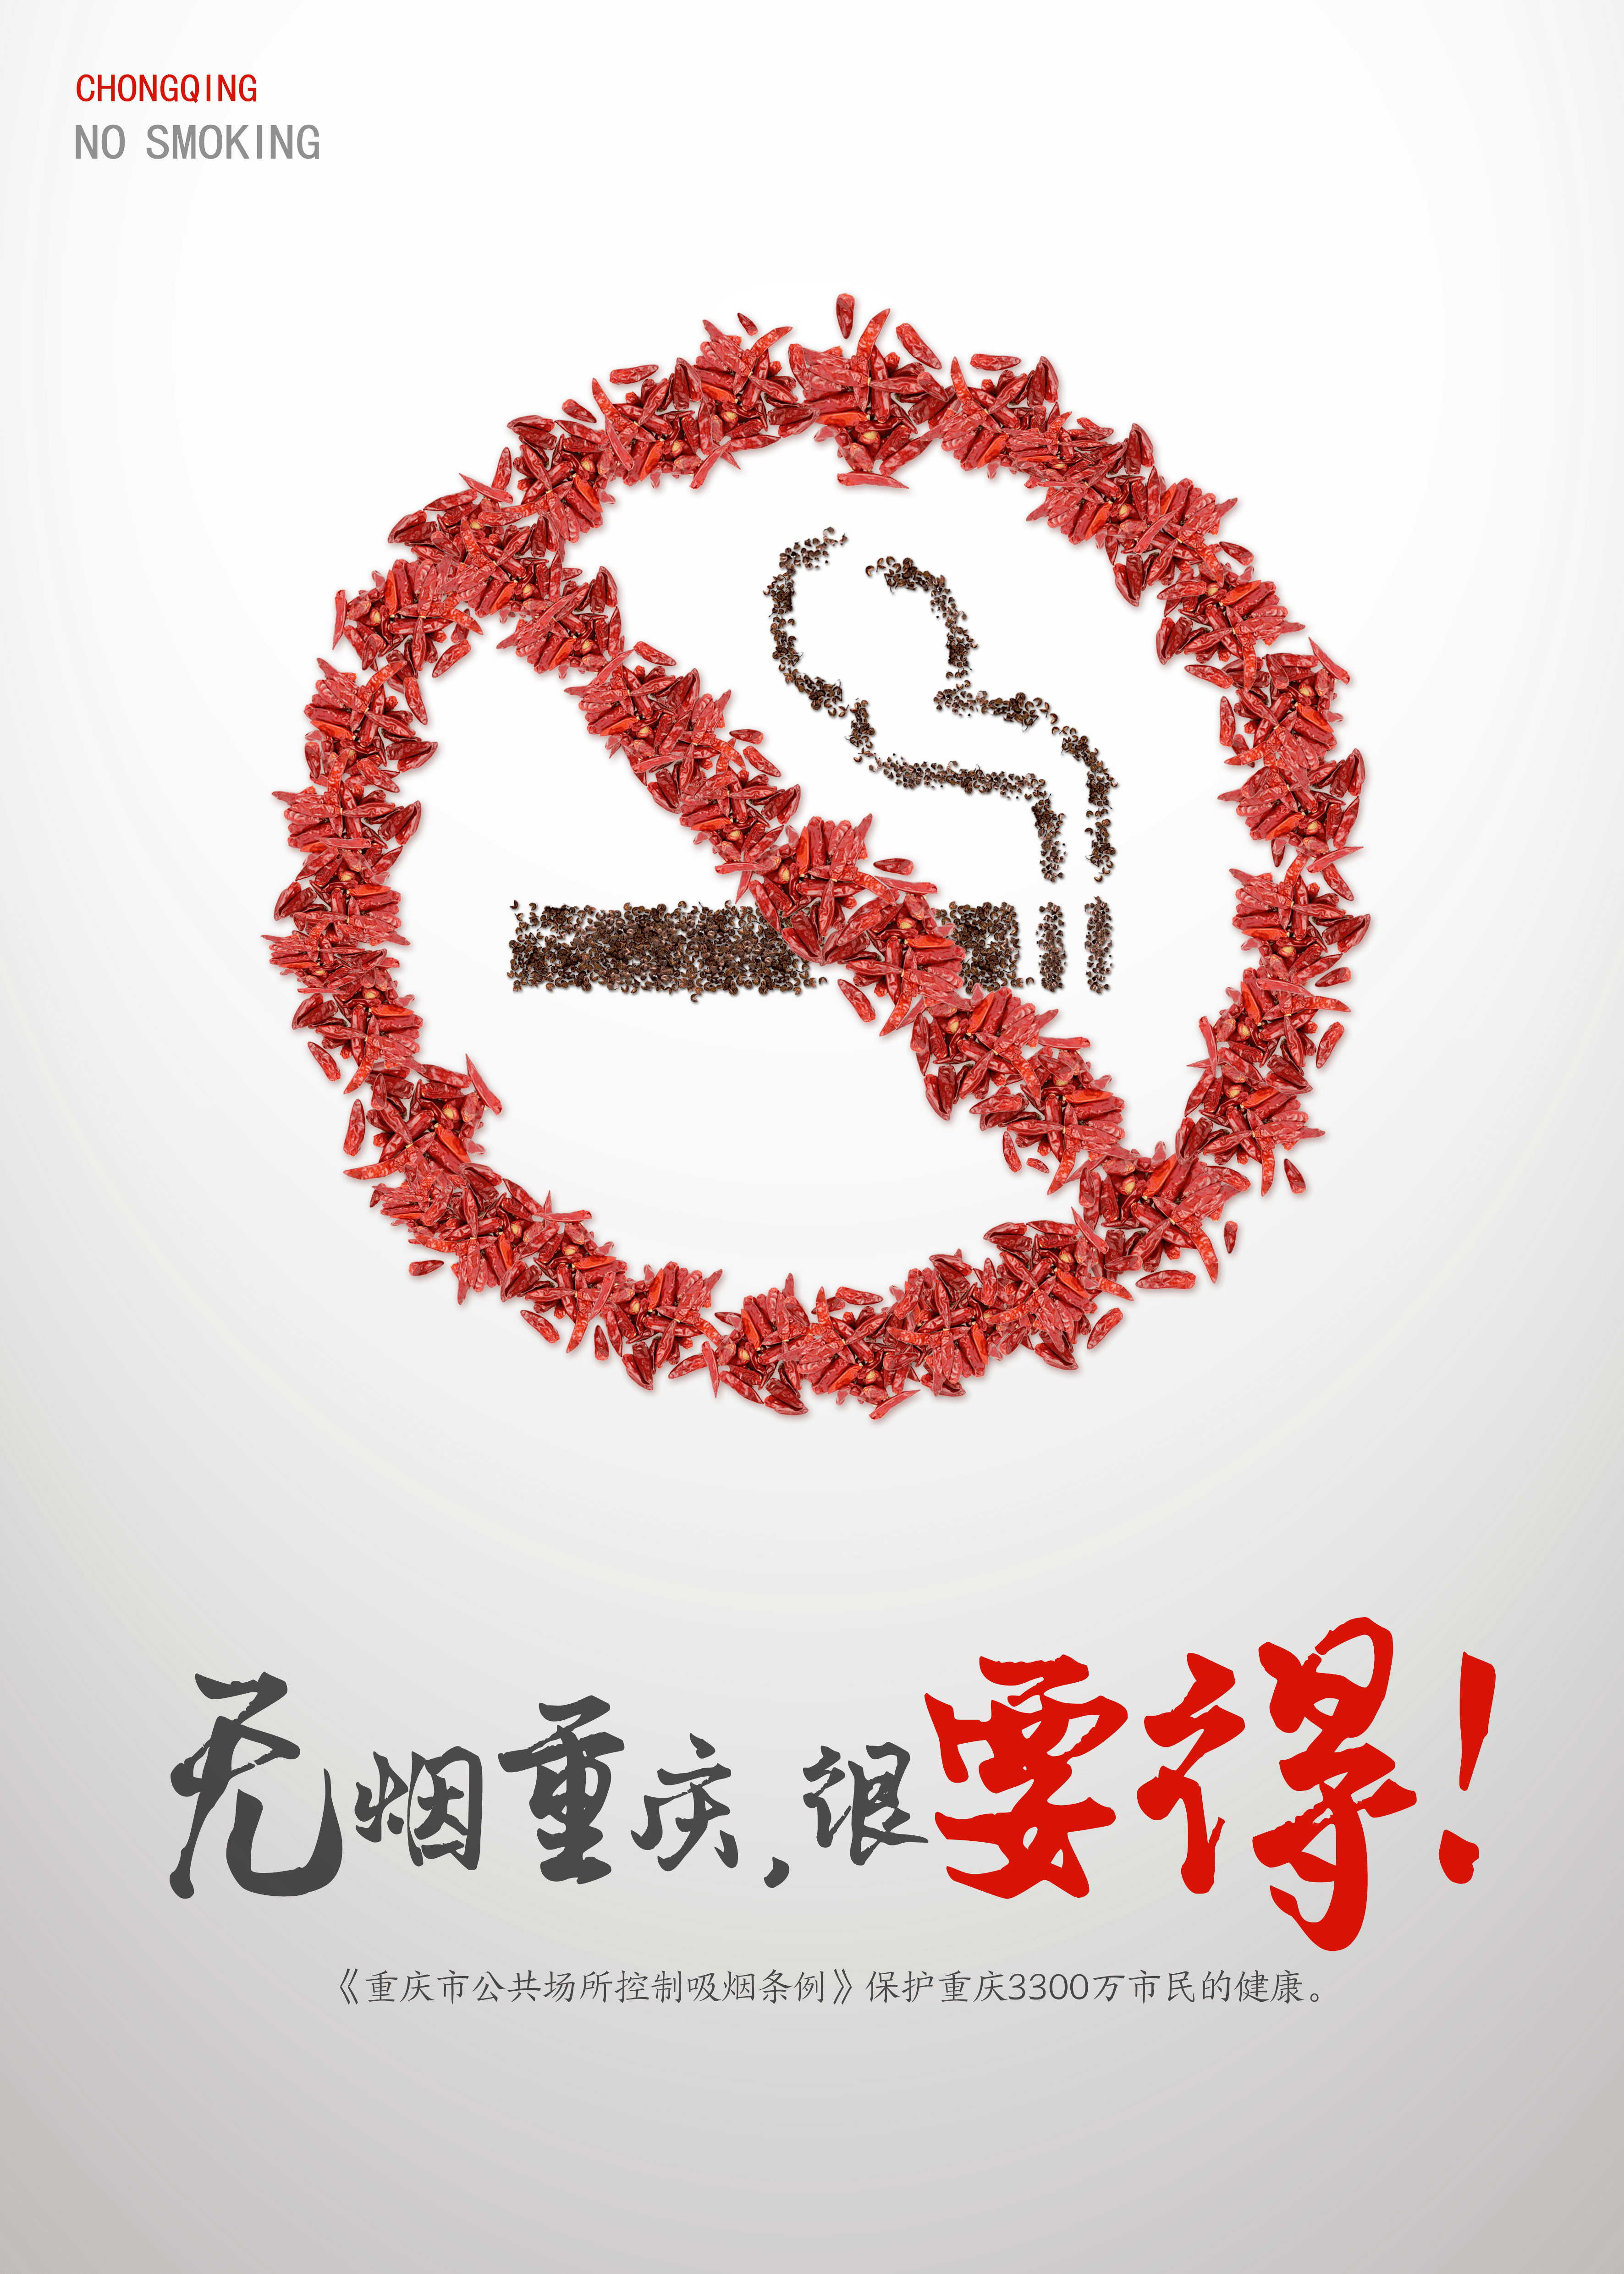 重庆控烟条例被质疑涉嫌违法,学者将提请全国人大审查